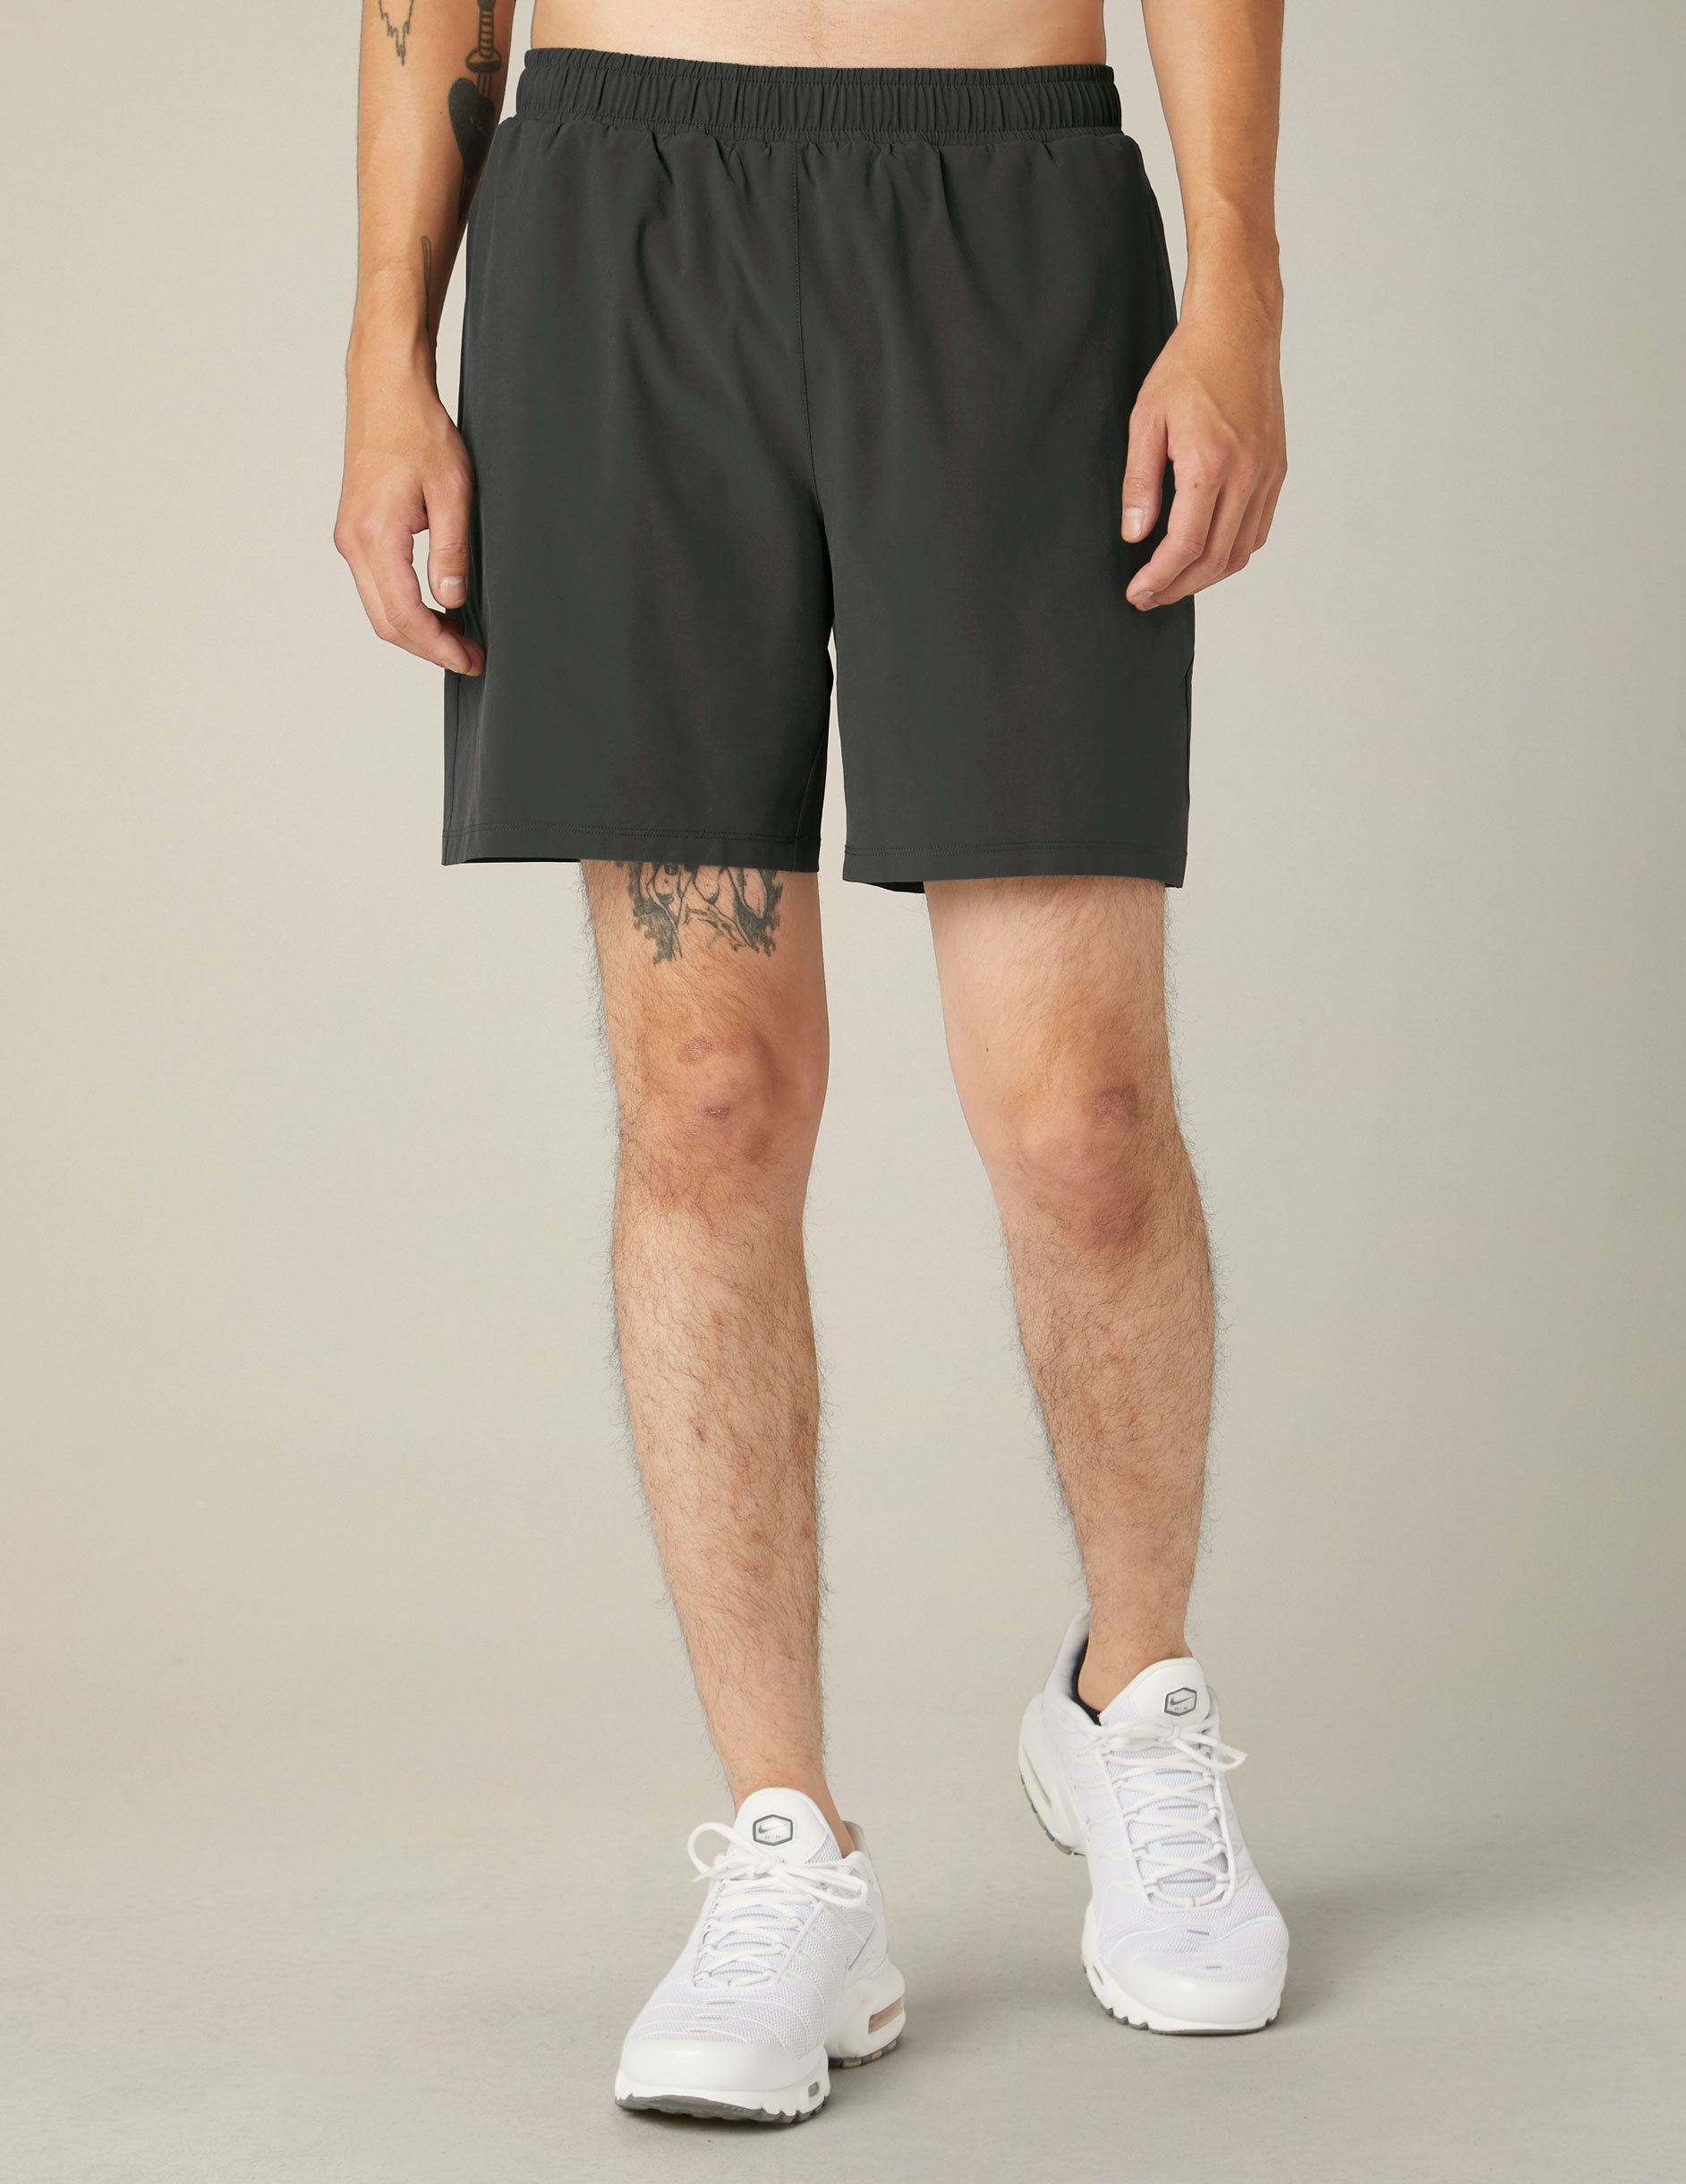 gray mens athletic shorts.